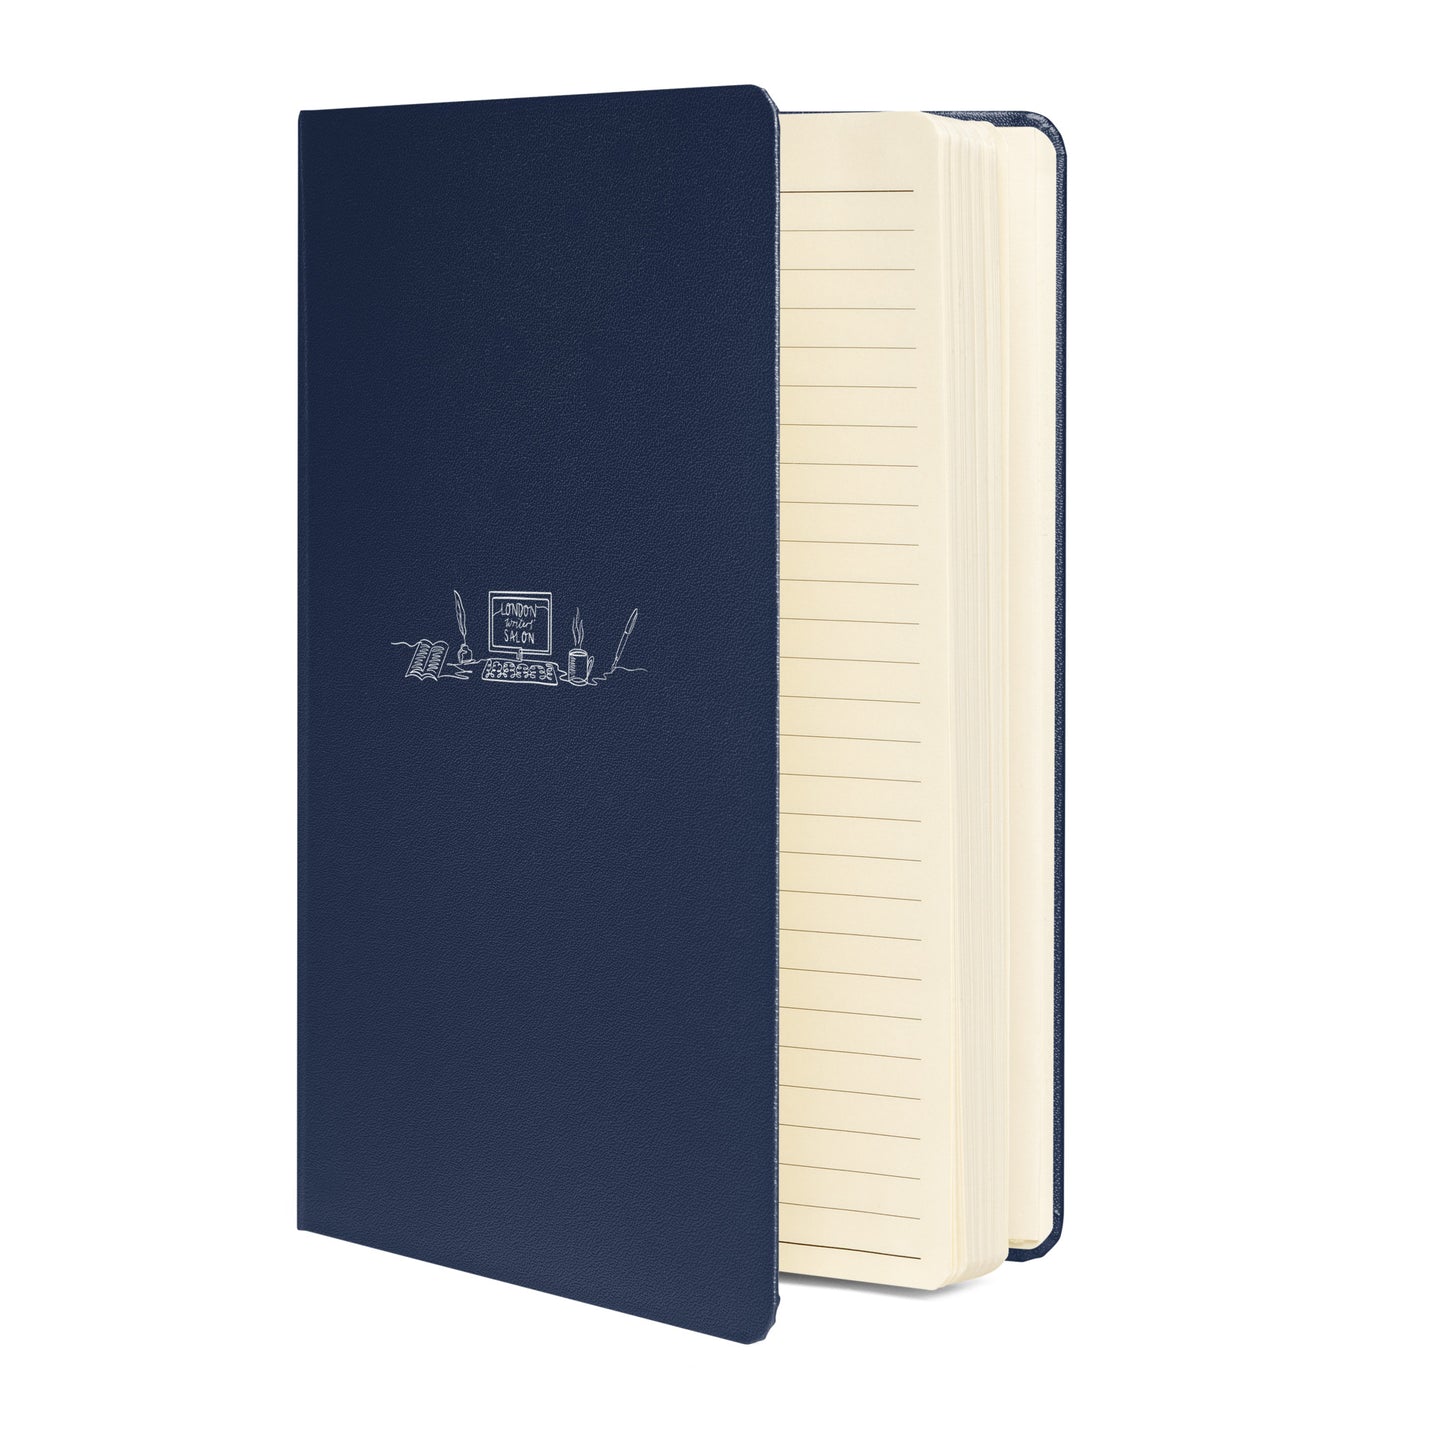 LWS Hardcover bound notebook - Dark Blue